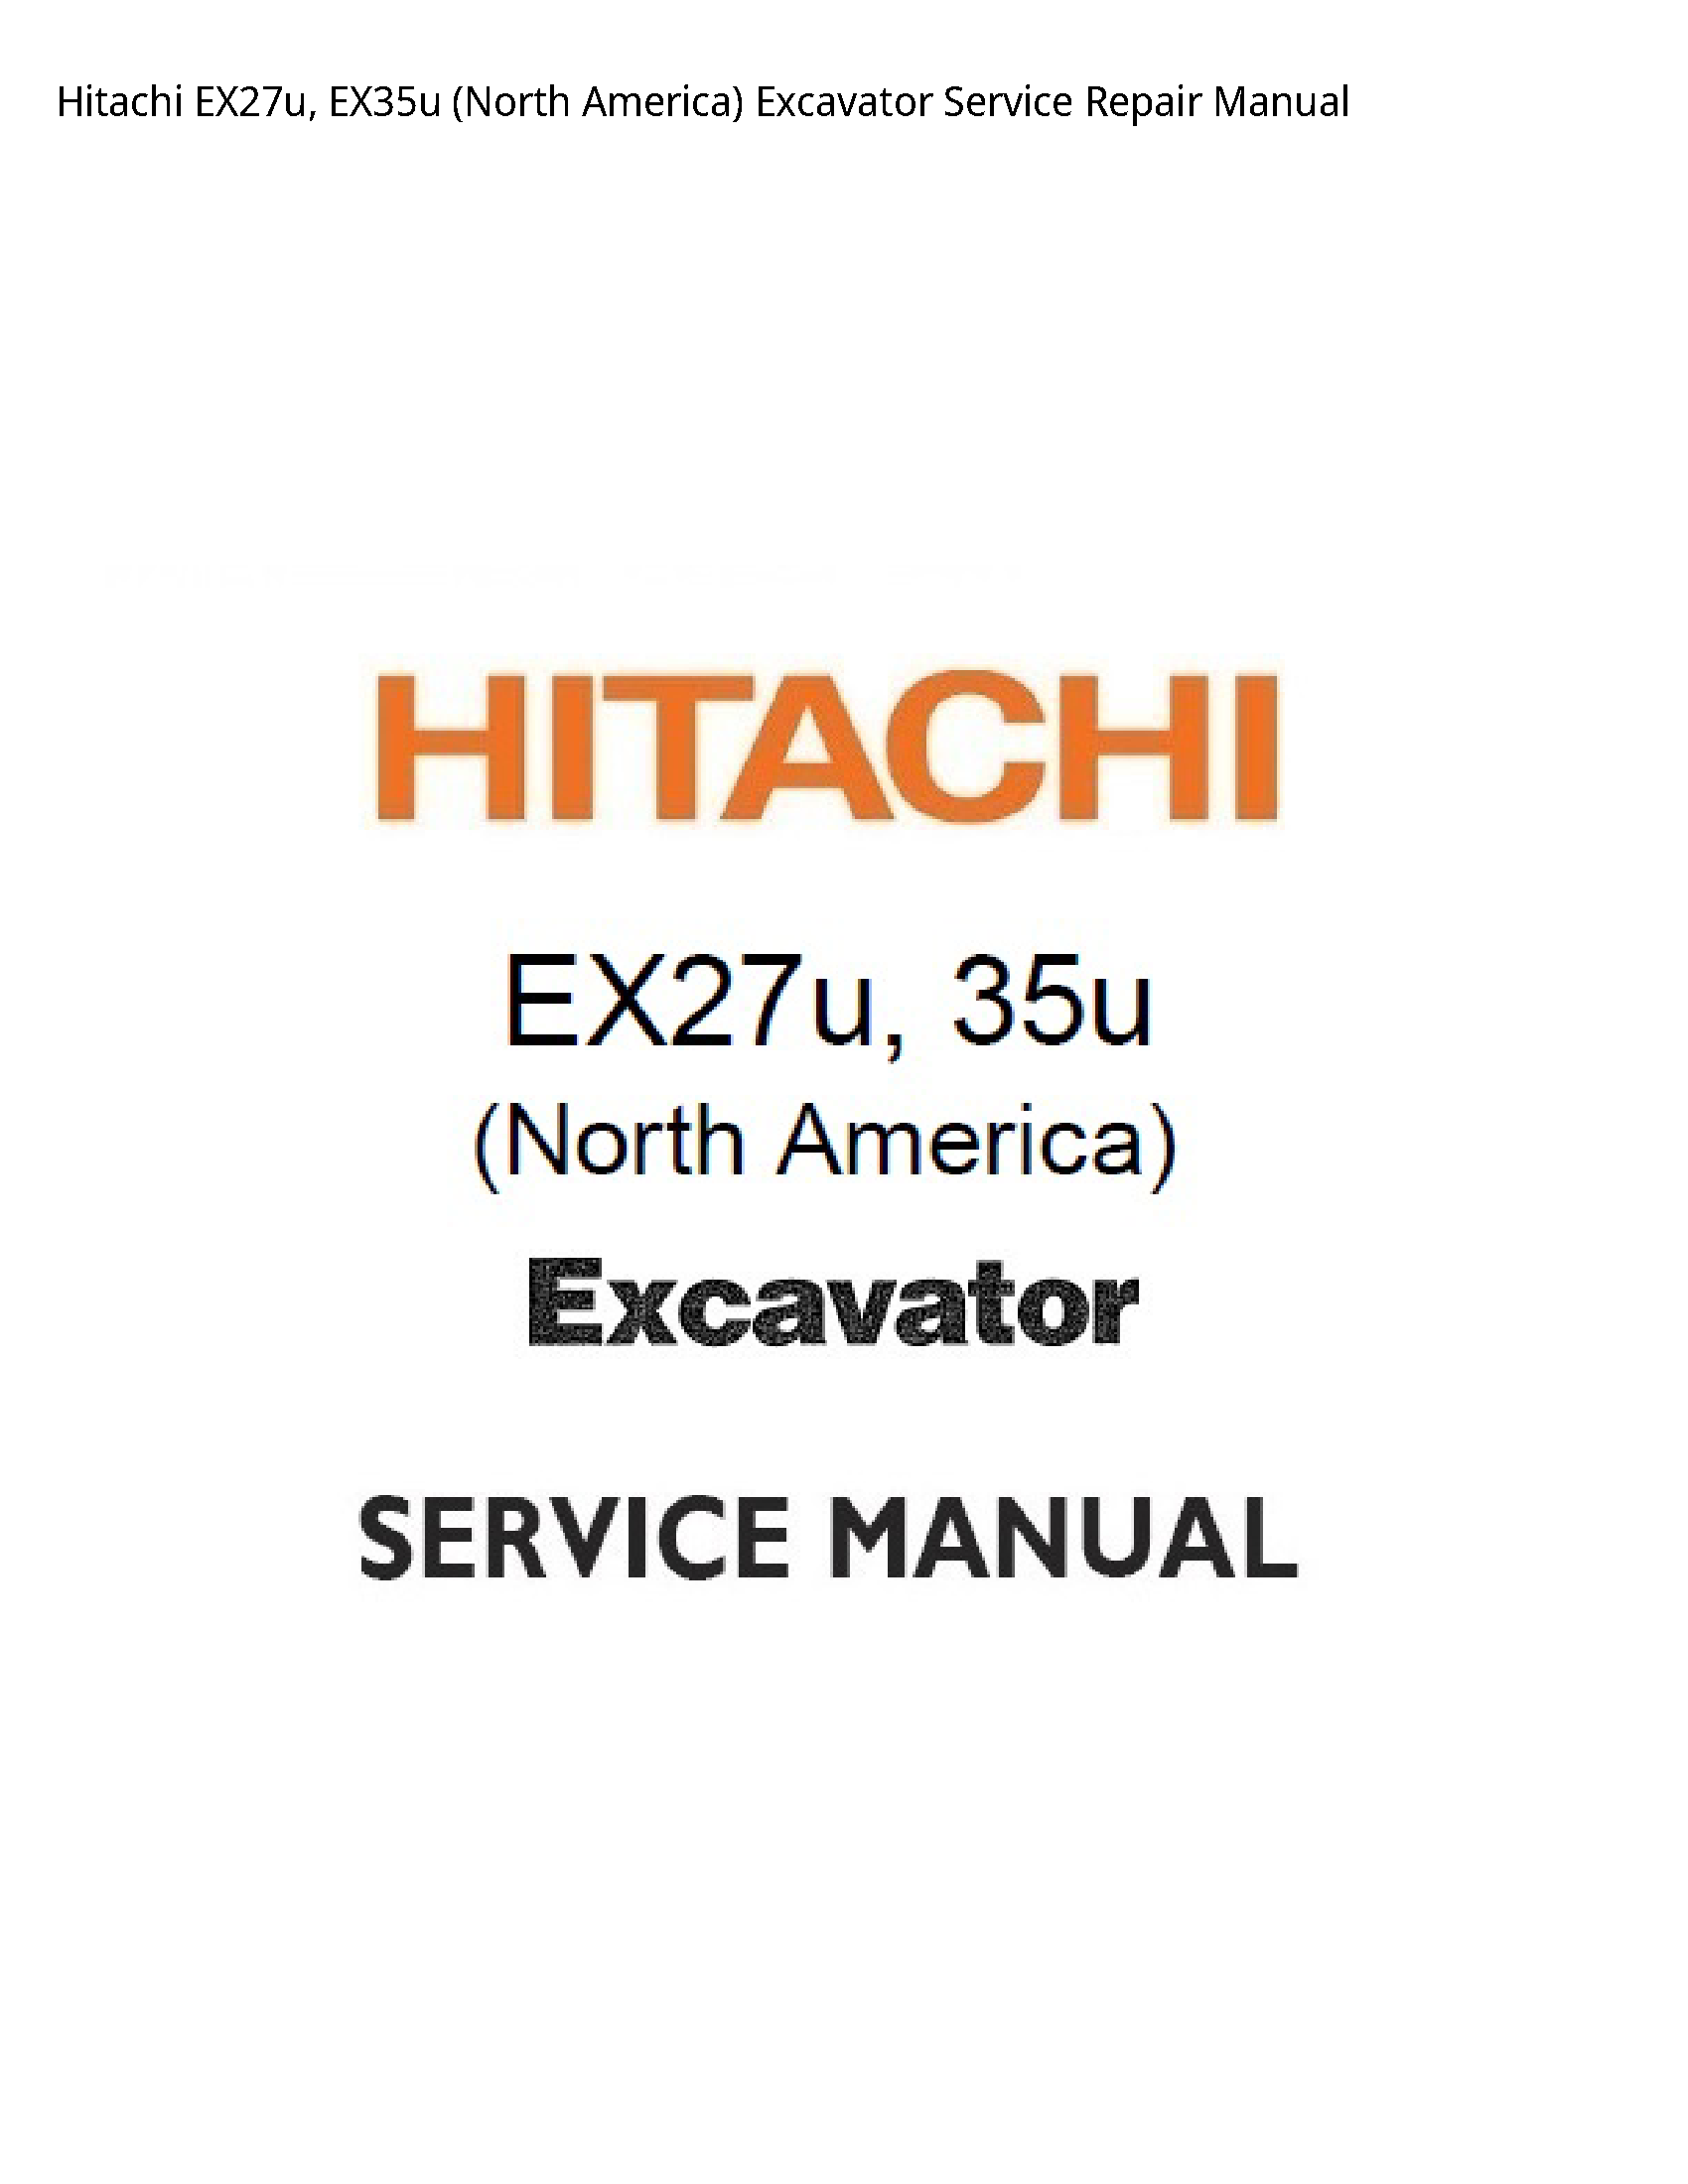 Hitachi EX27u (North America) Excavator manual